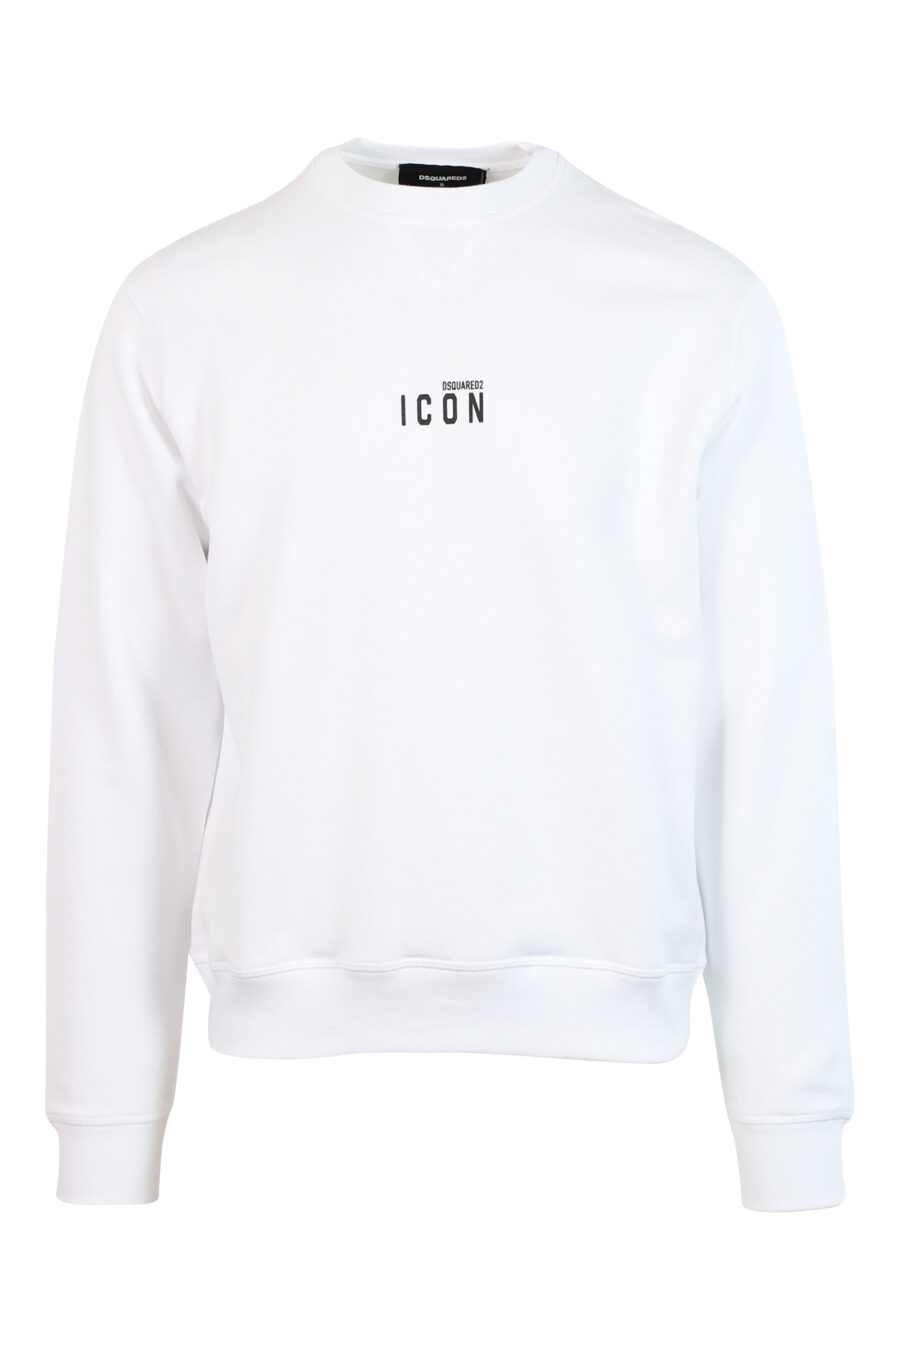 Weißes Sweatshirt mit schwarzem Mini-Logo "Icon" in der Mitte - 8052134565063